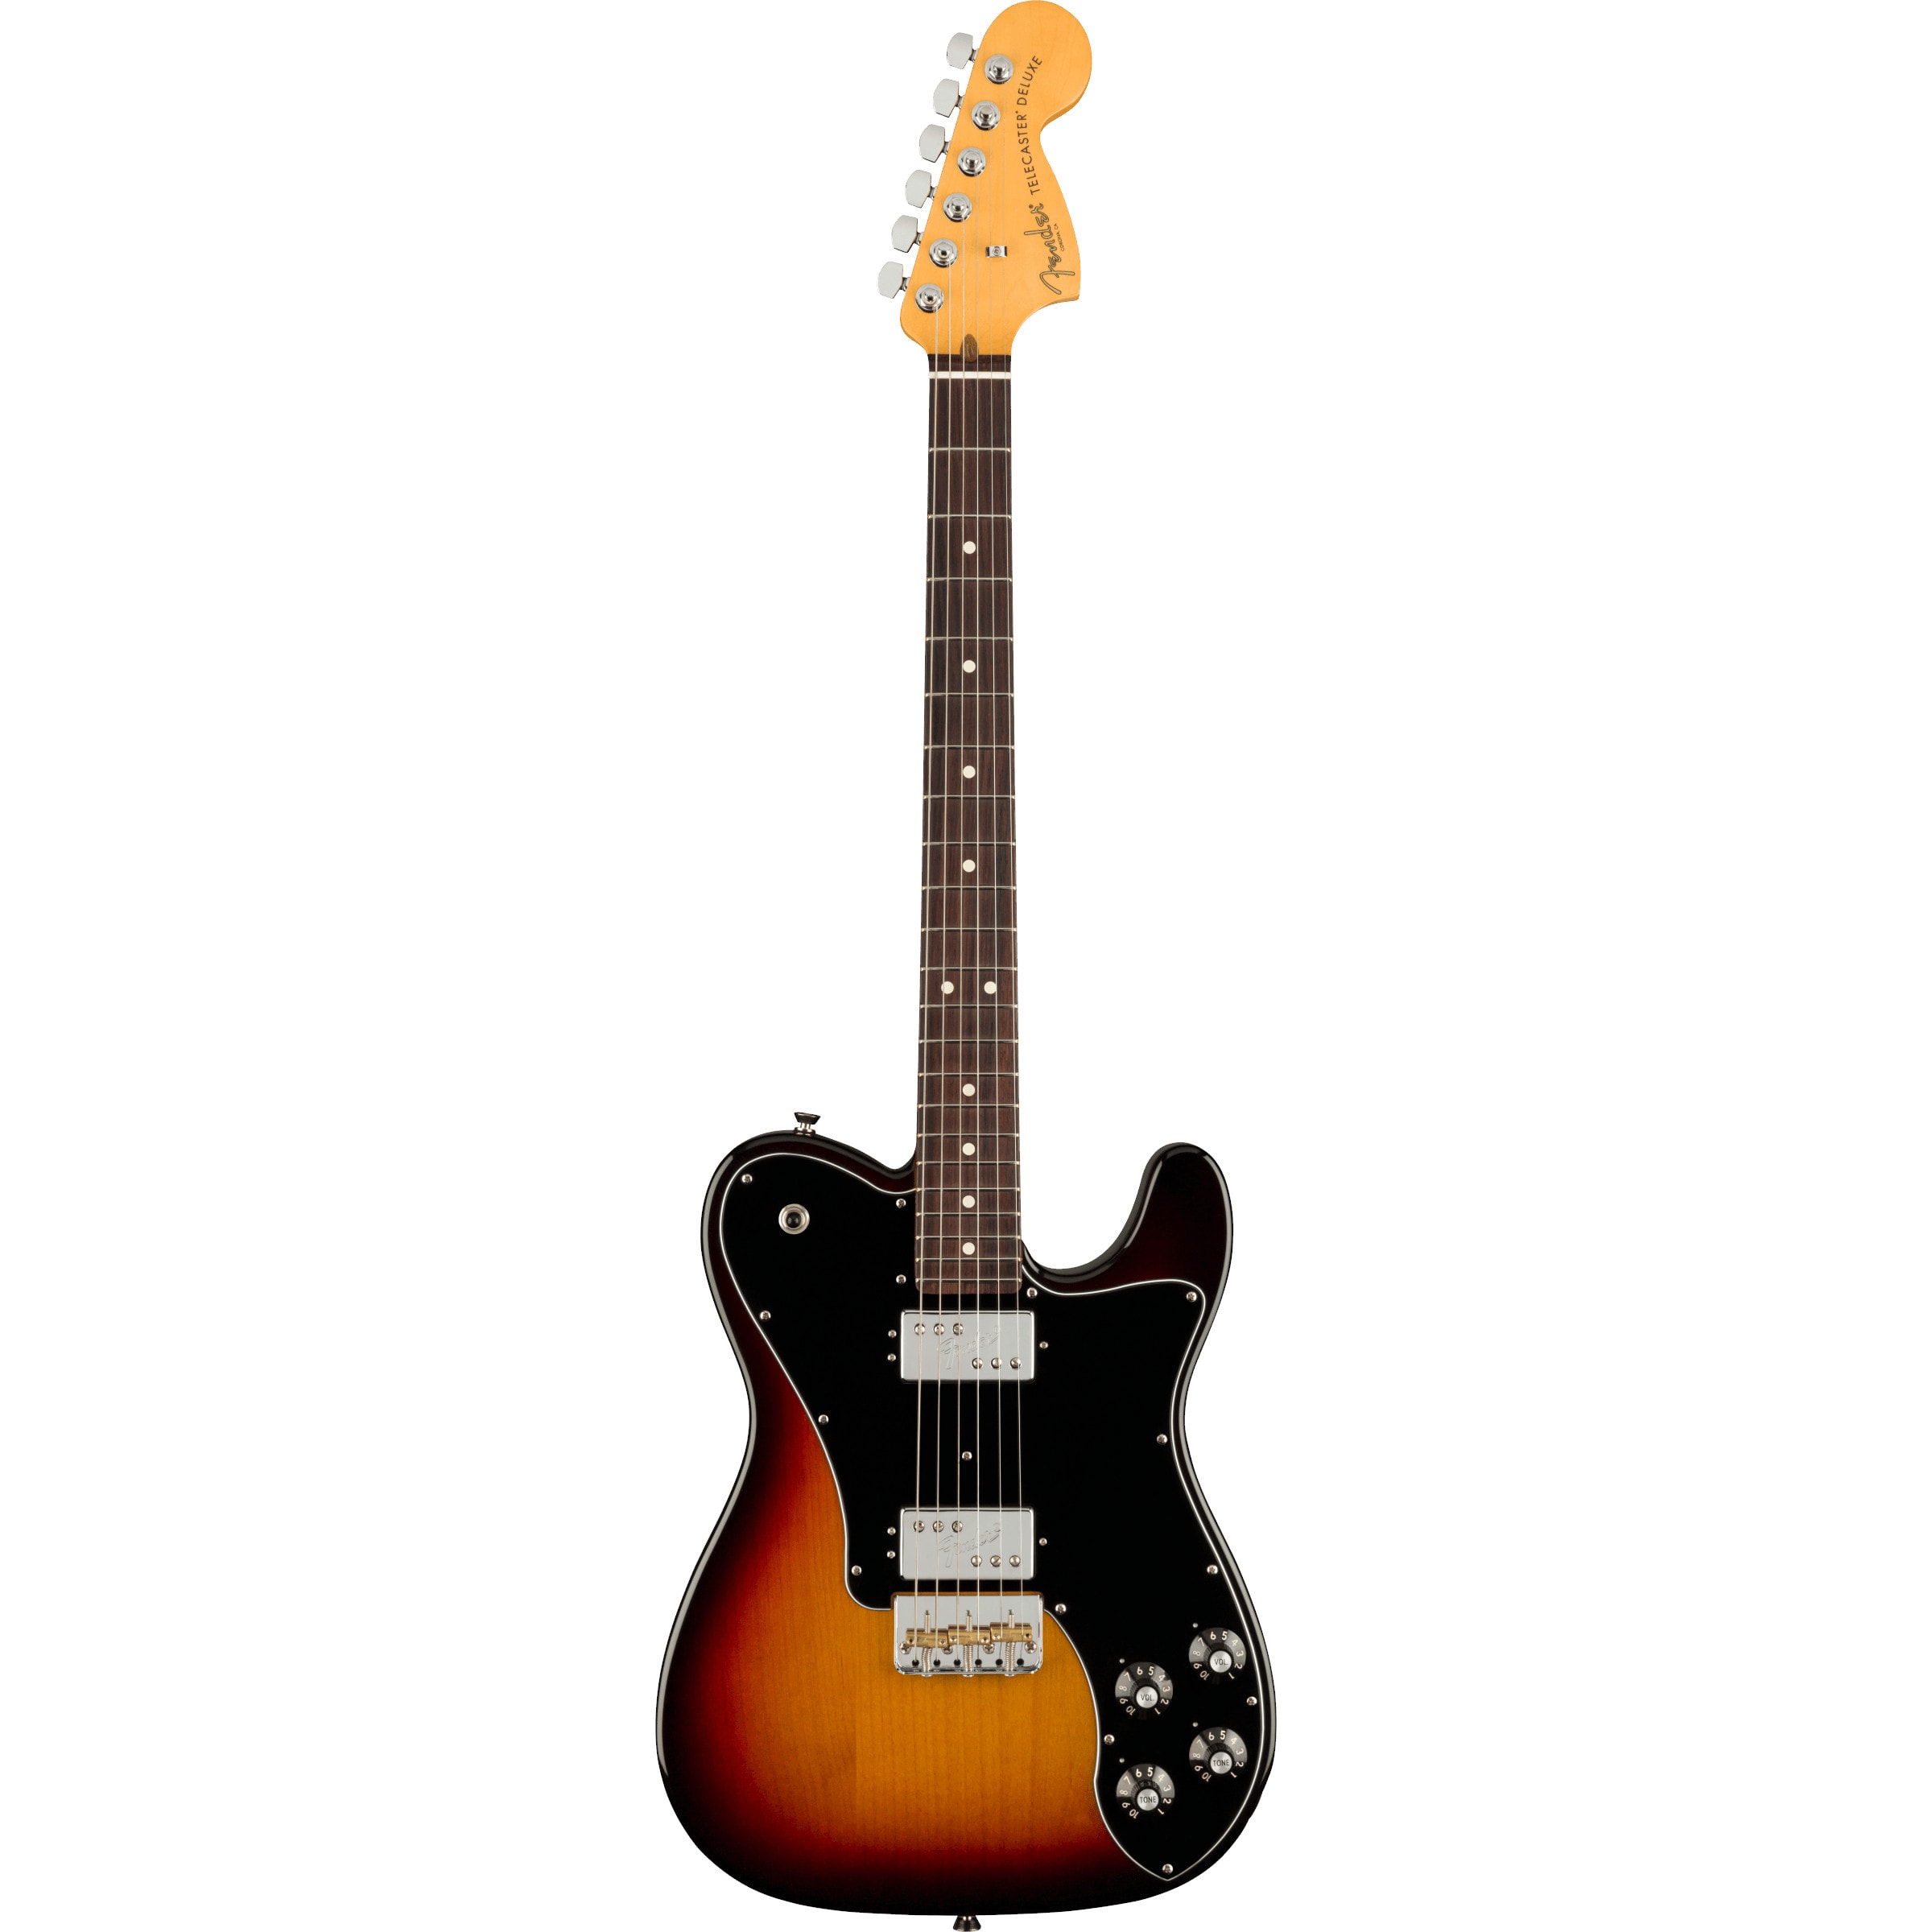 Fender American Professional II Telecaster Deluxe 3-Color Sunburst RW elektrische gitaar met koffer